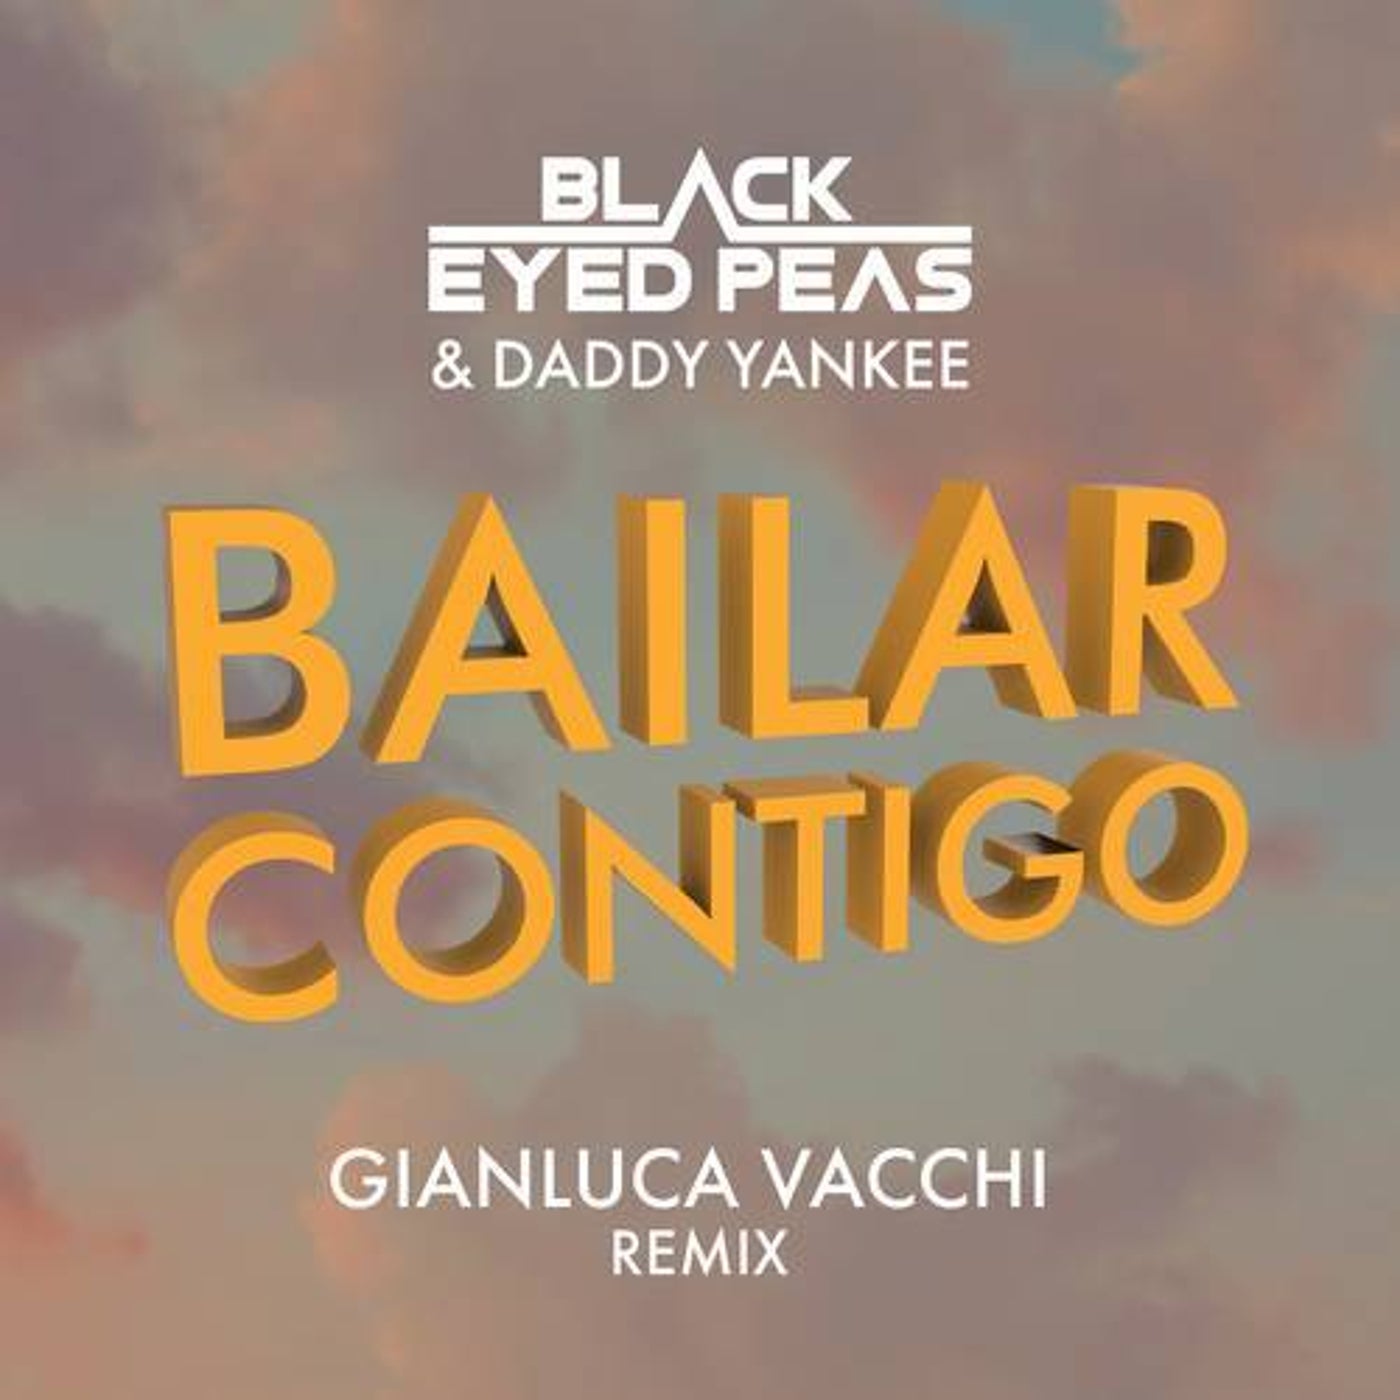 BAILAR CONTIGO (Gianluca Vacchi Extended Remix)